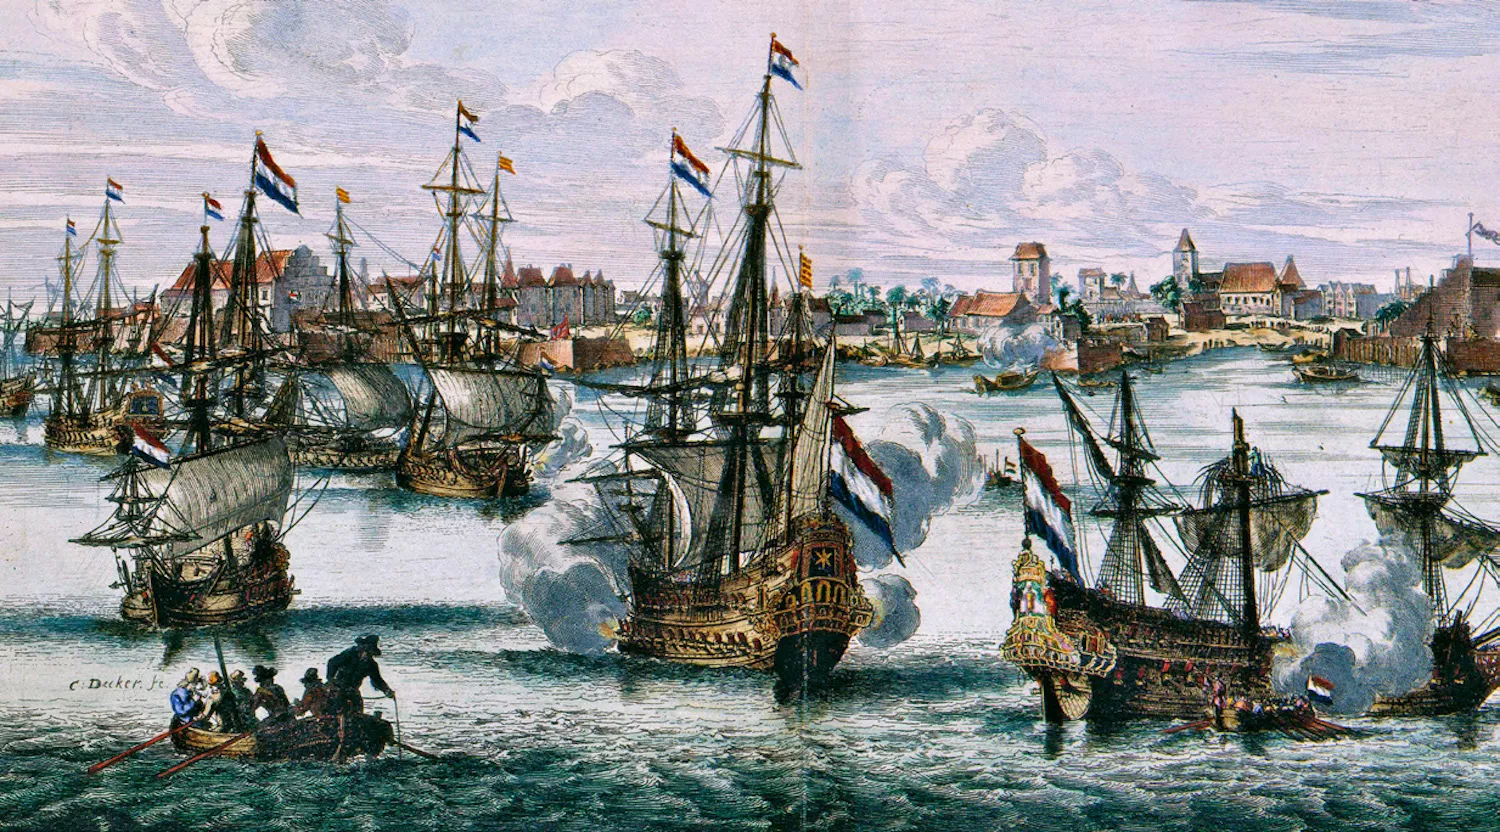 La Companyia Holandesa va trencar el monopoli portuguès de la canyella i pràcticament va expulsar els lusitans de la costa malabar de l'Índia